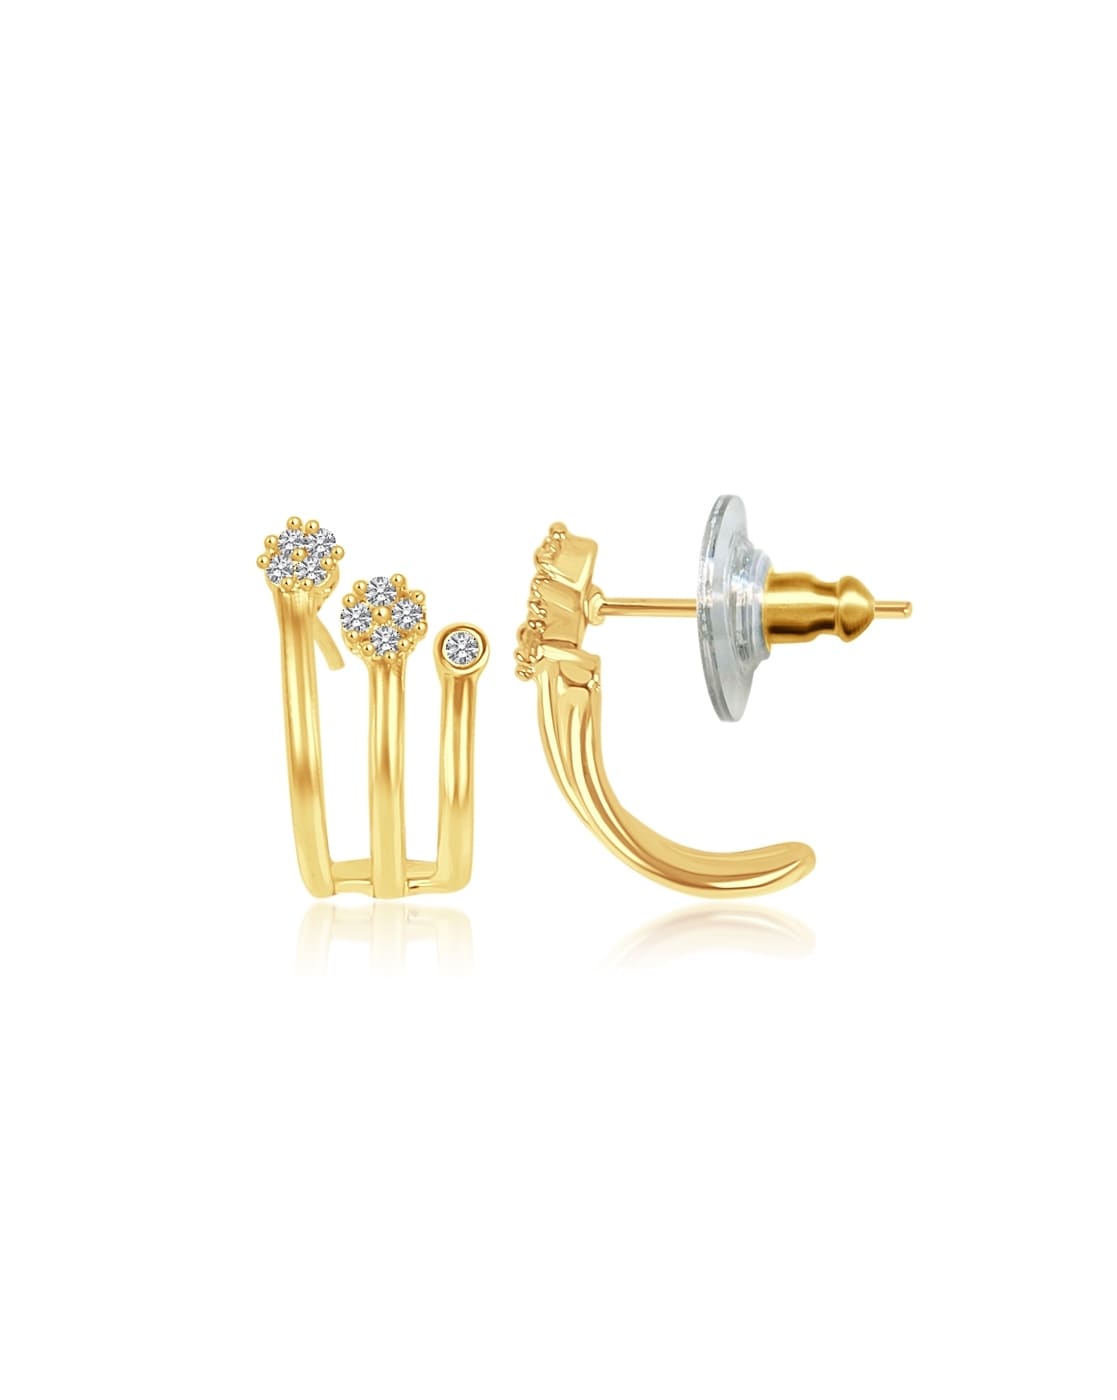 Buy Vogue Of Heart Diamond Earrings |GRT Jewellers